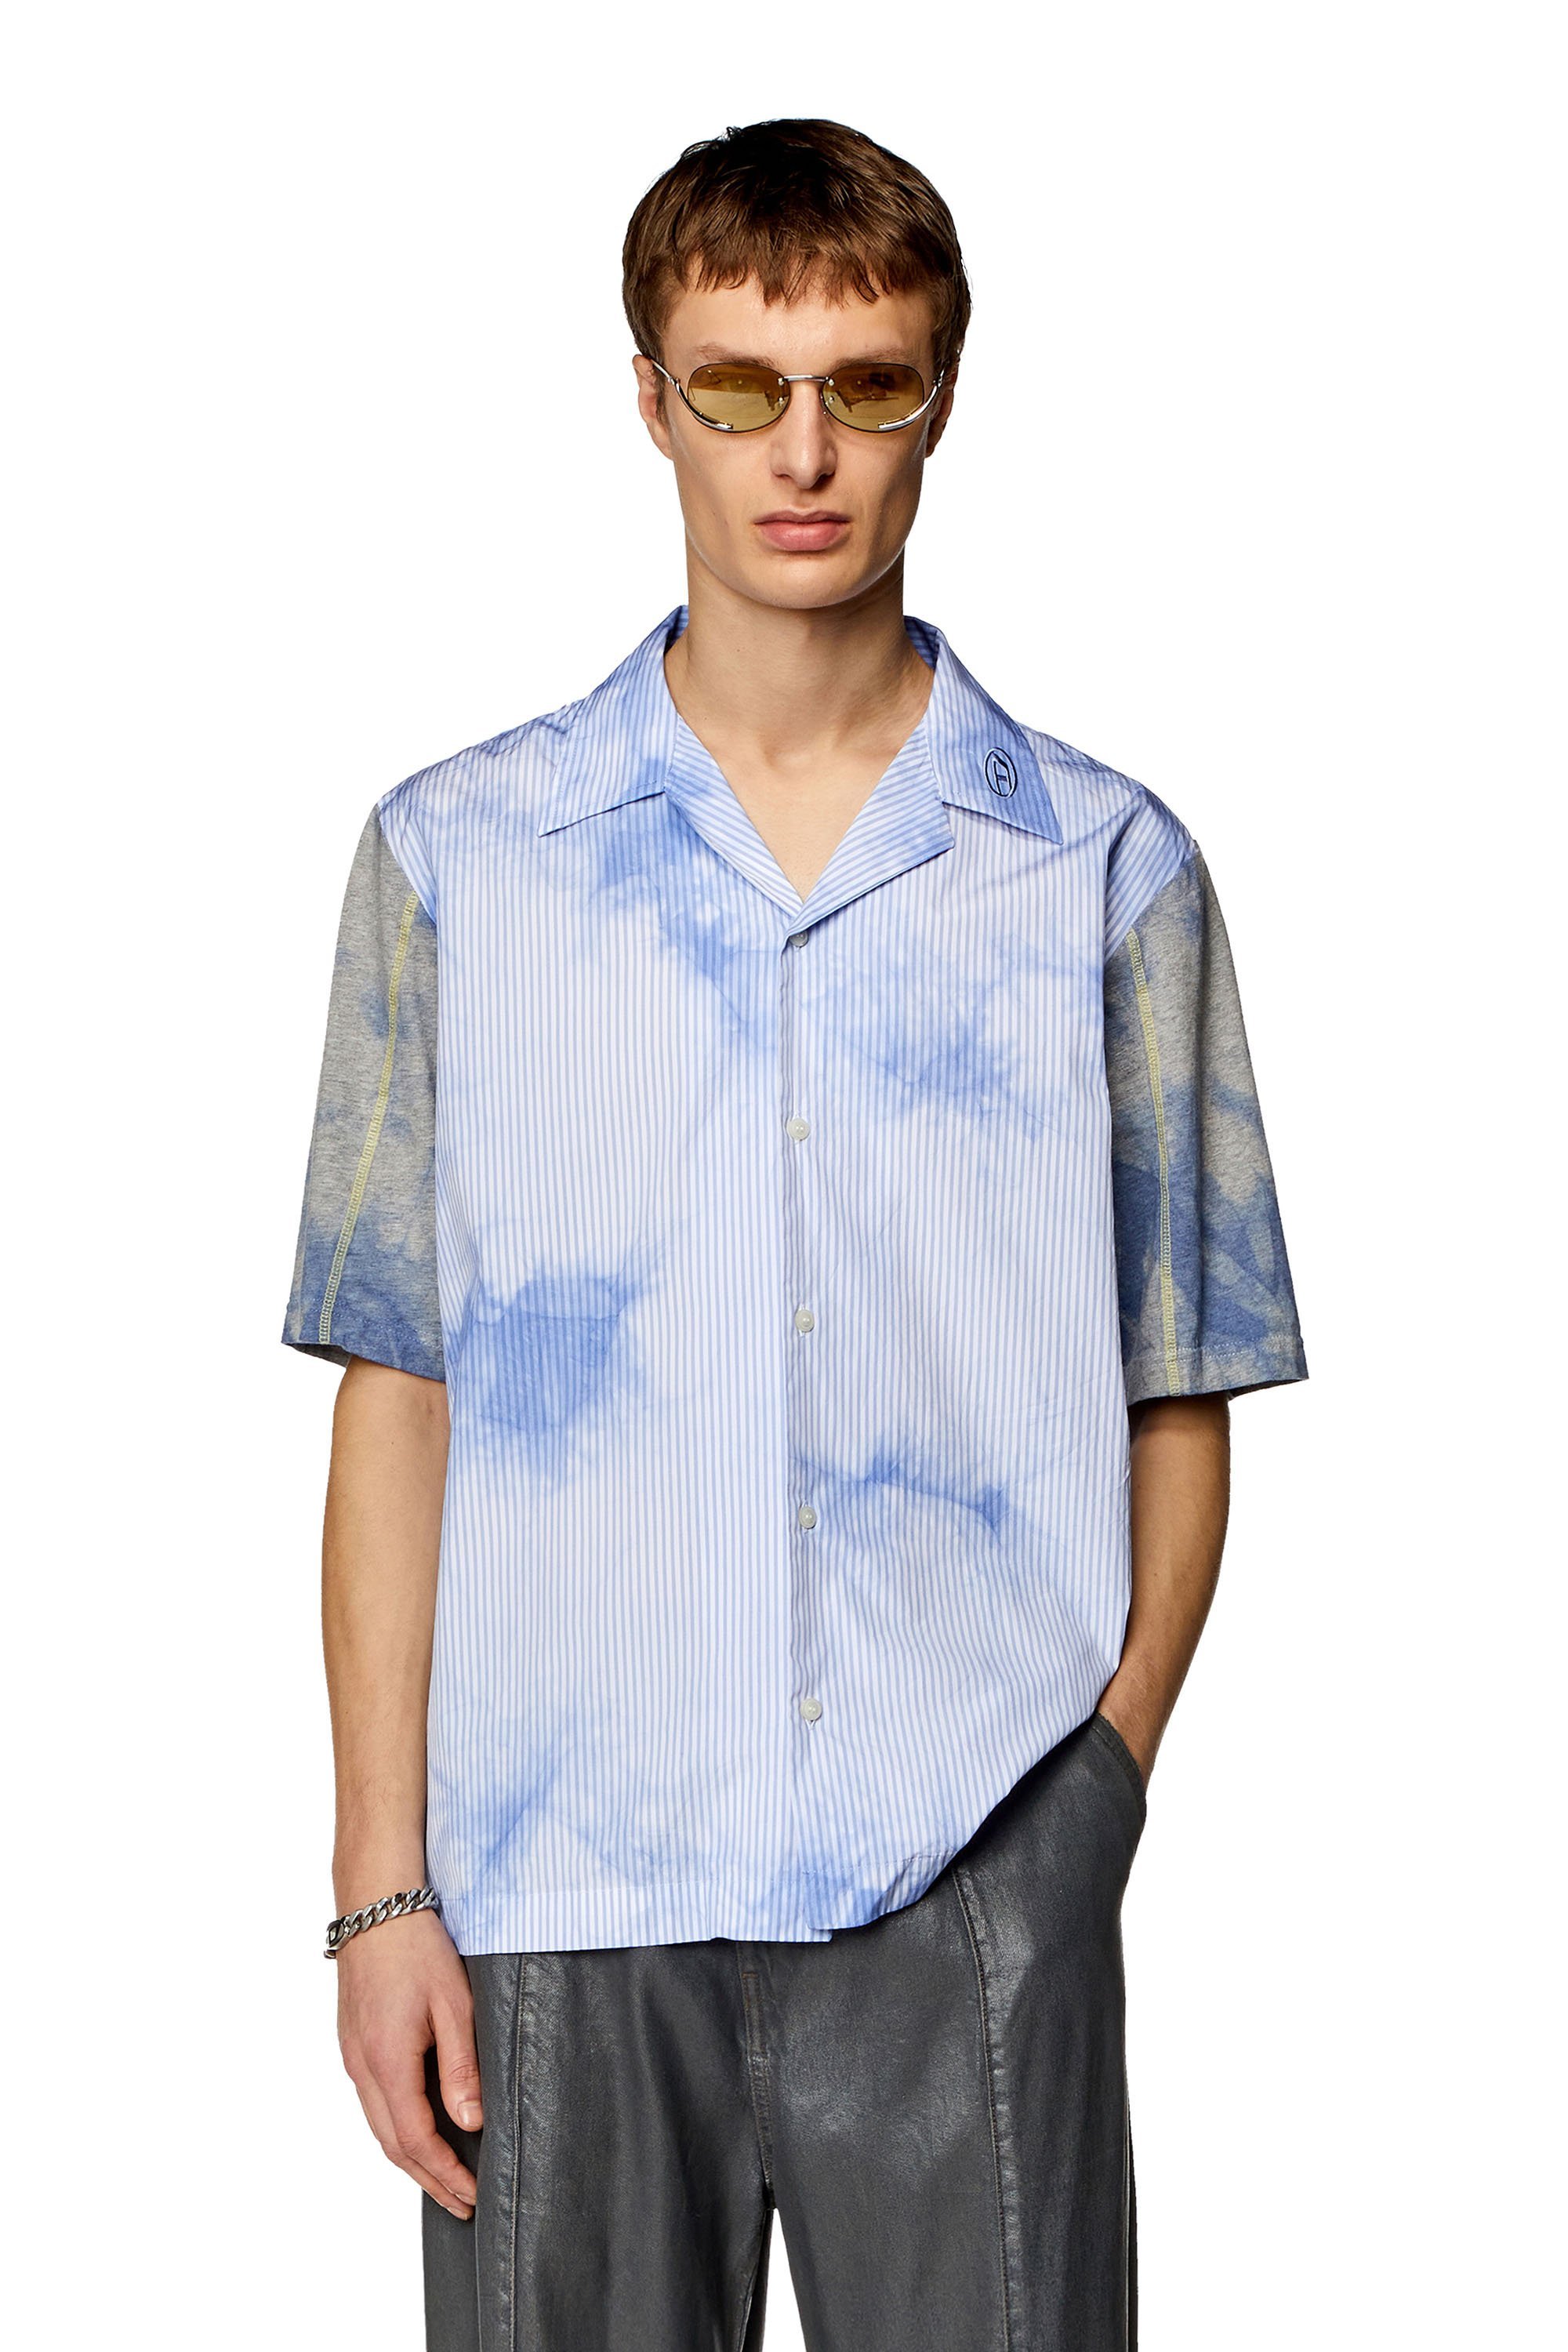 ディーゼル(DIESEL) 半ソデ メンズシャツ・ワイシャツ | 通販・人気